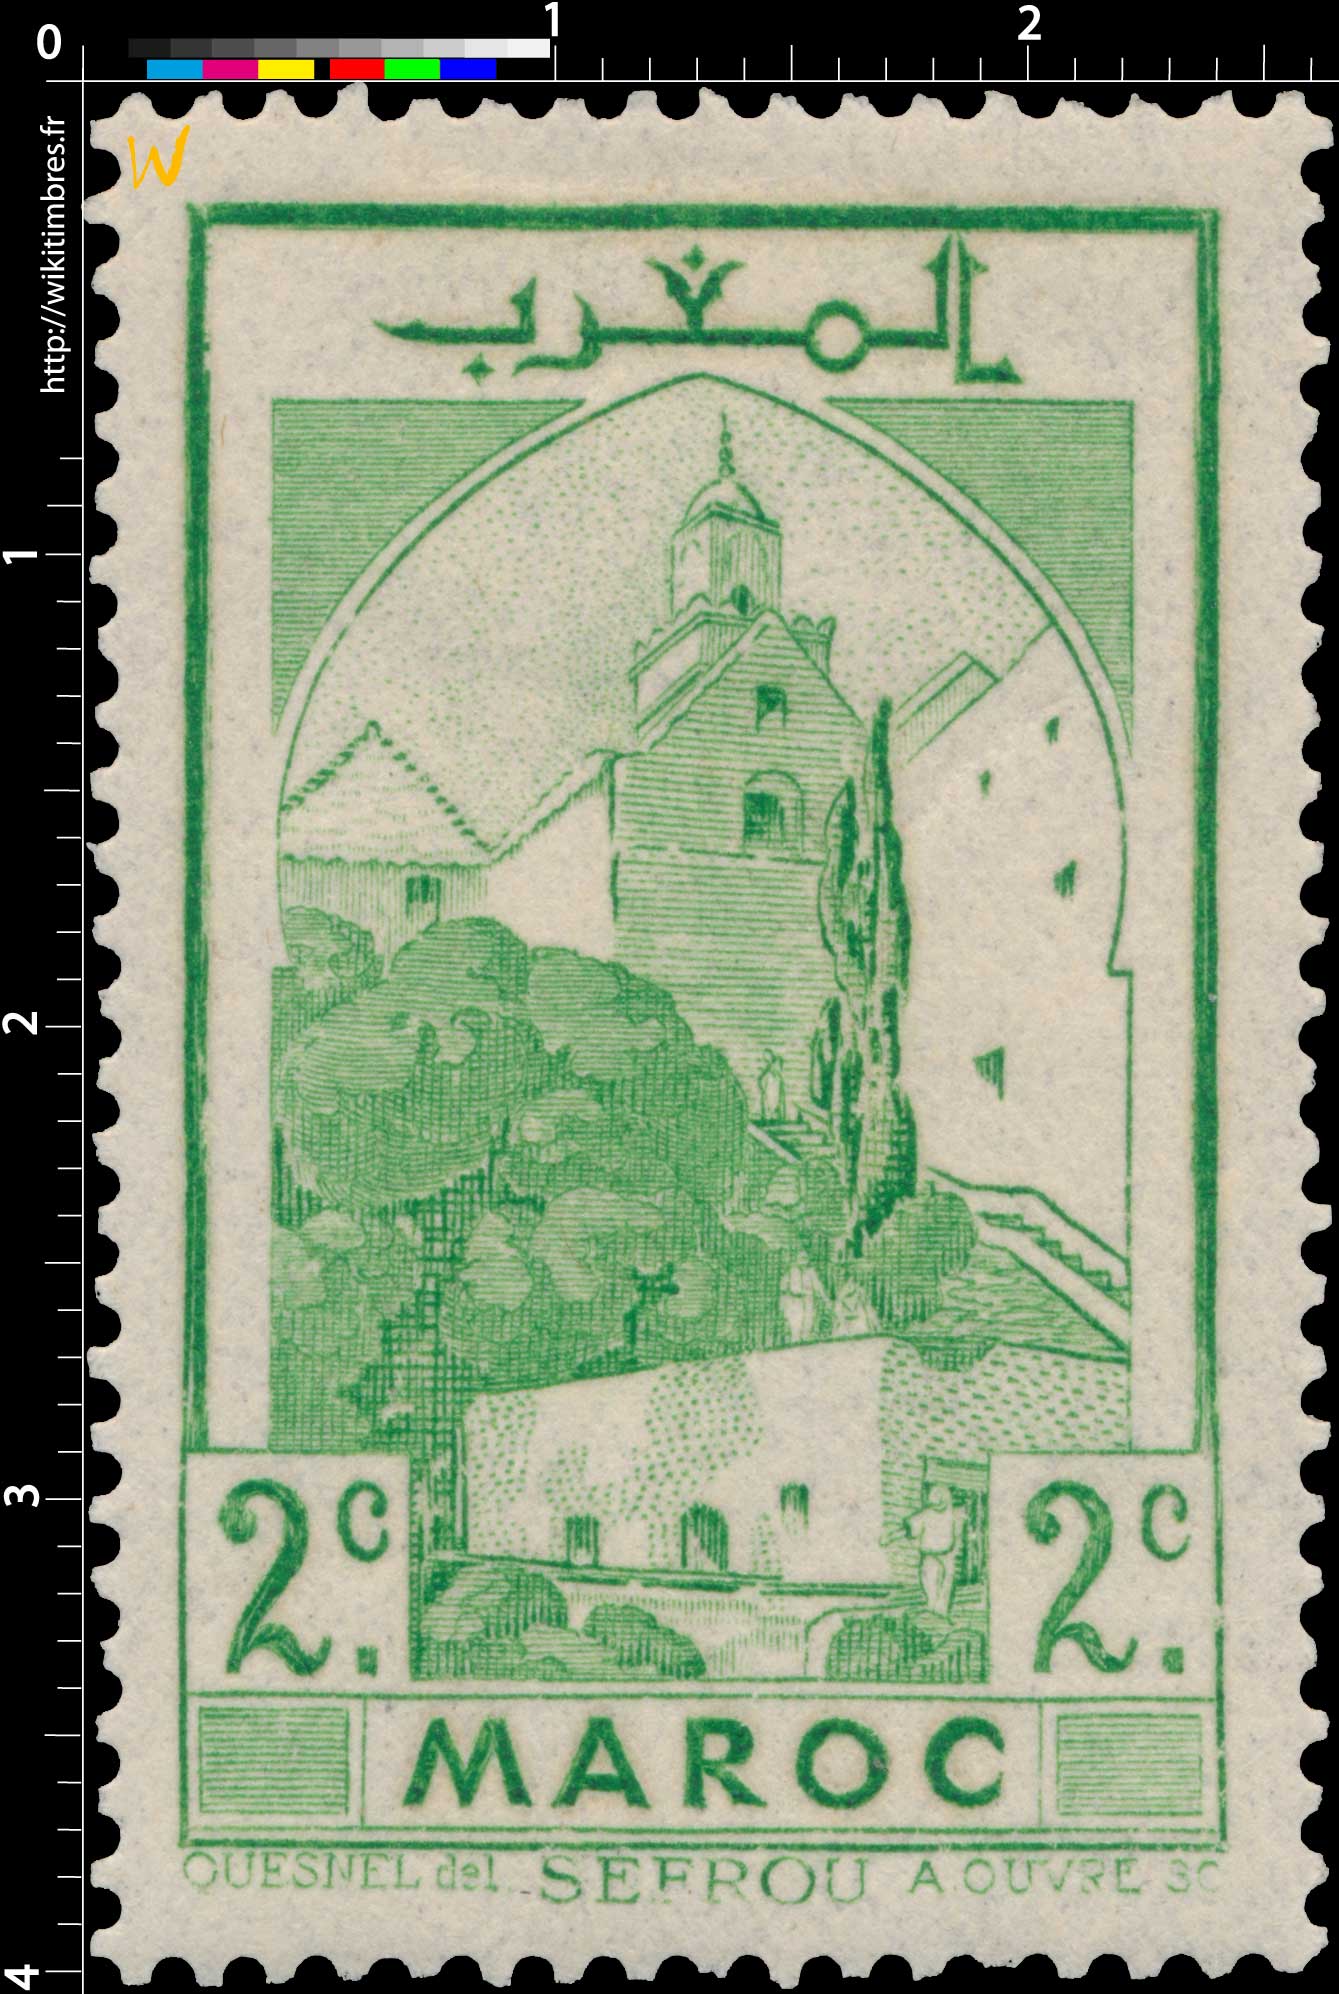 1939 Maroc - Mosquée de Sefrou